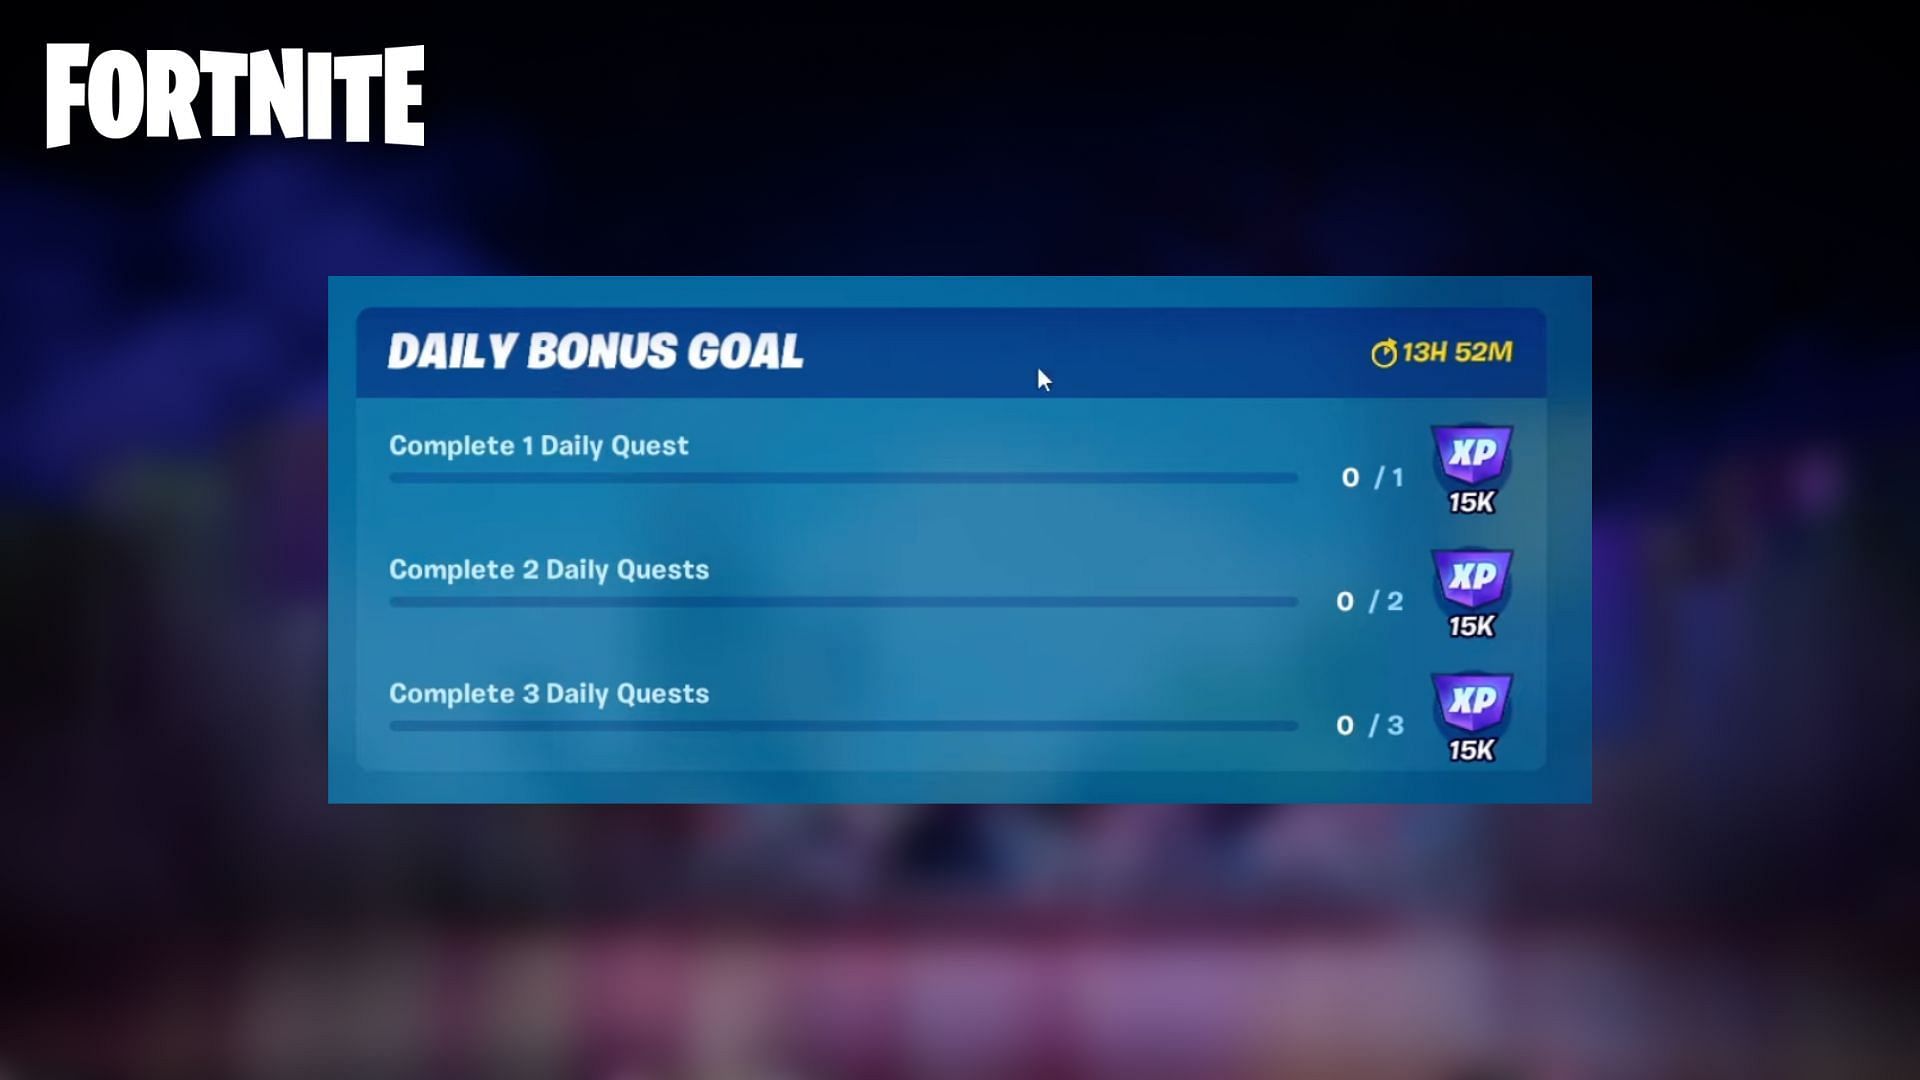 Daily Bonus Goals in Fortnite (Image via Sportskeeda)